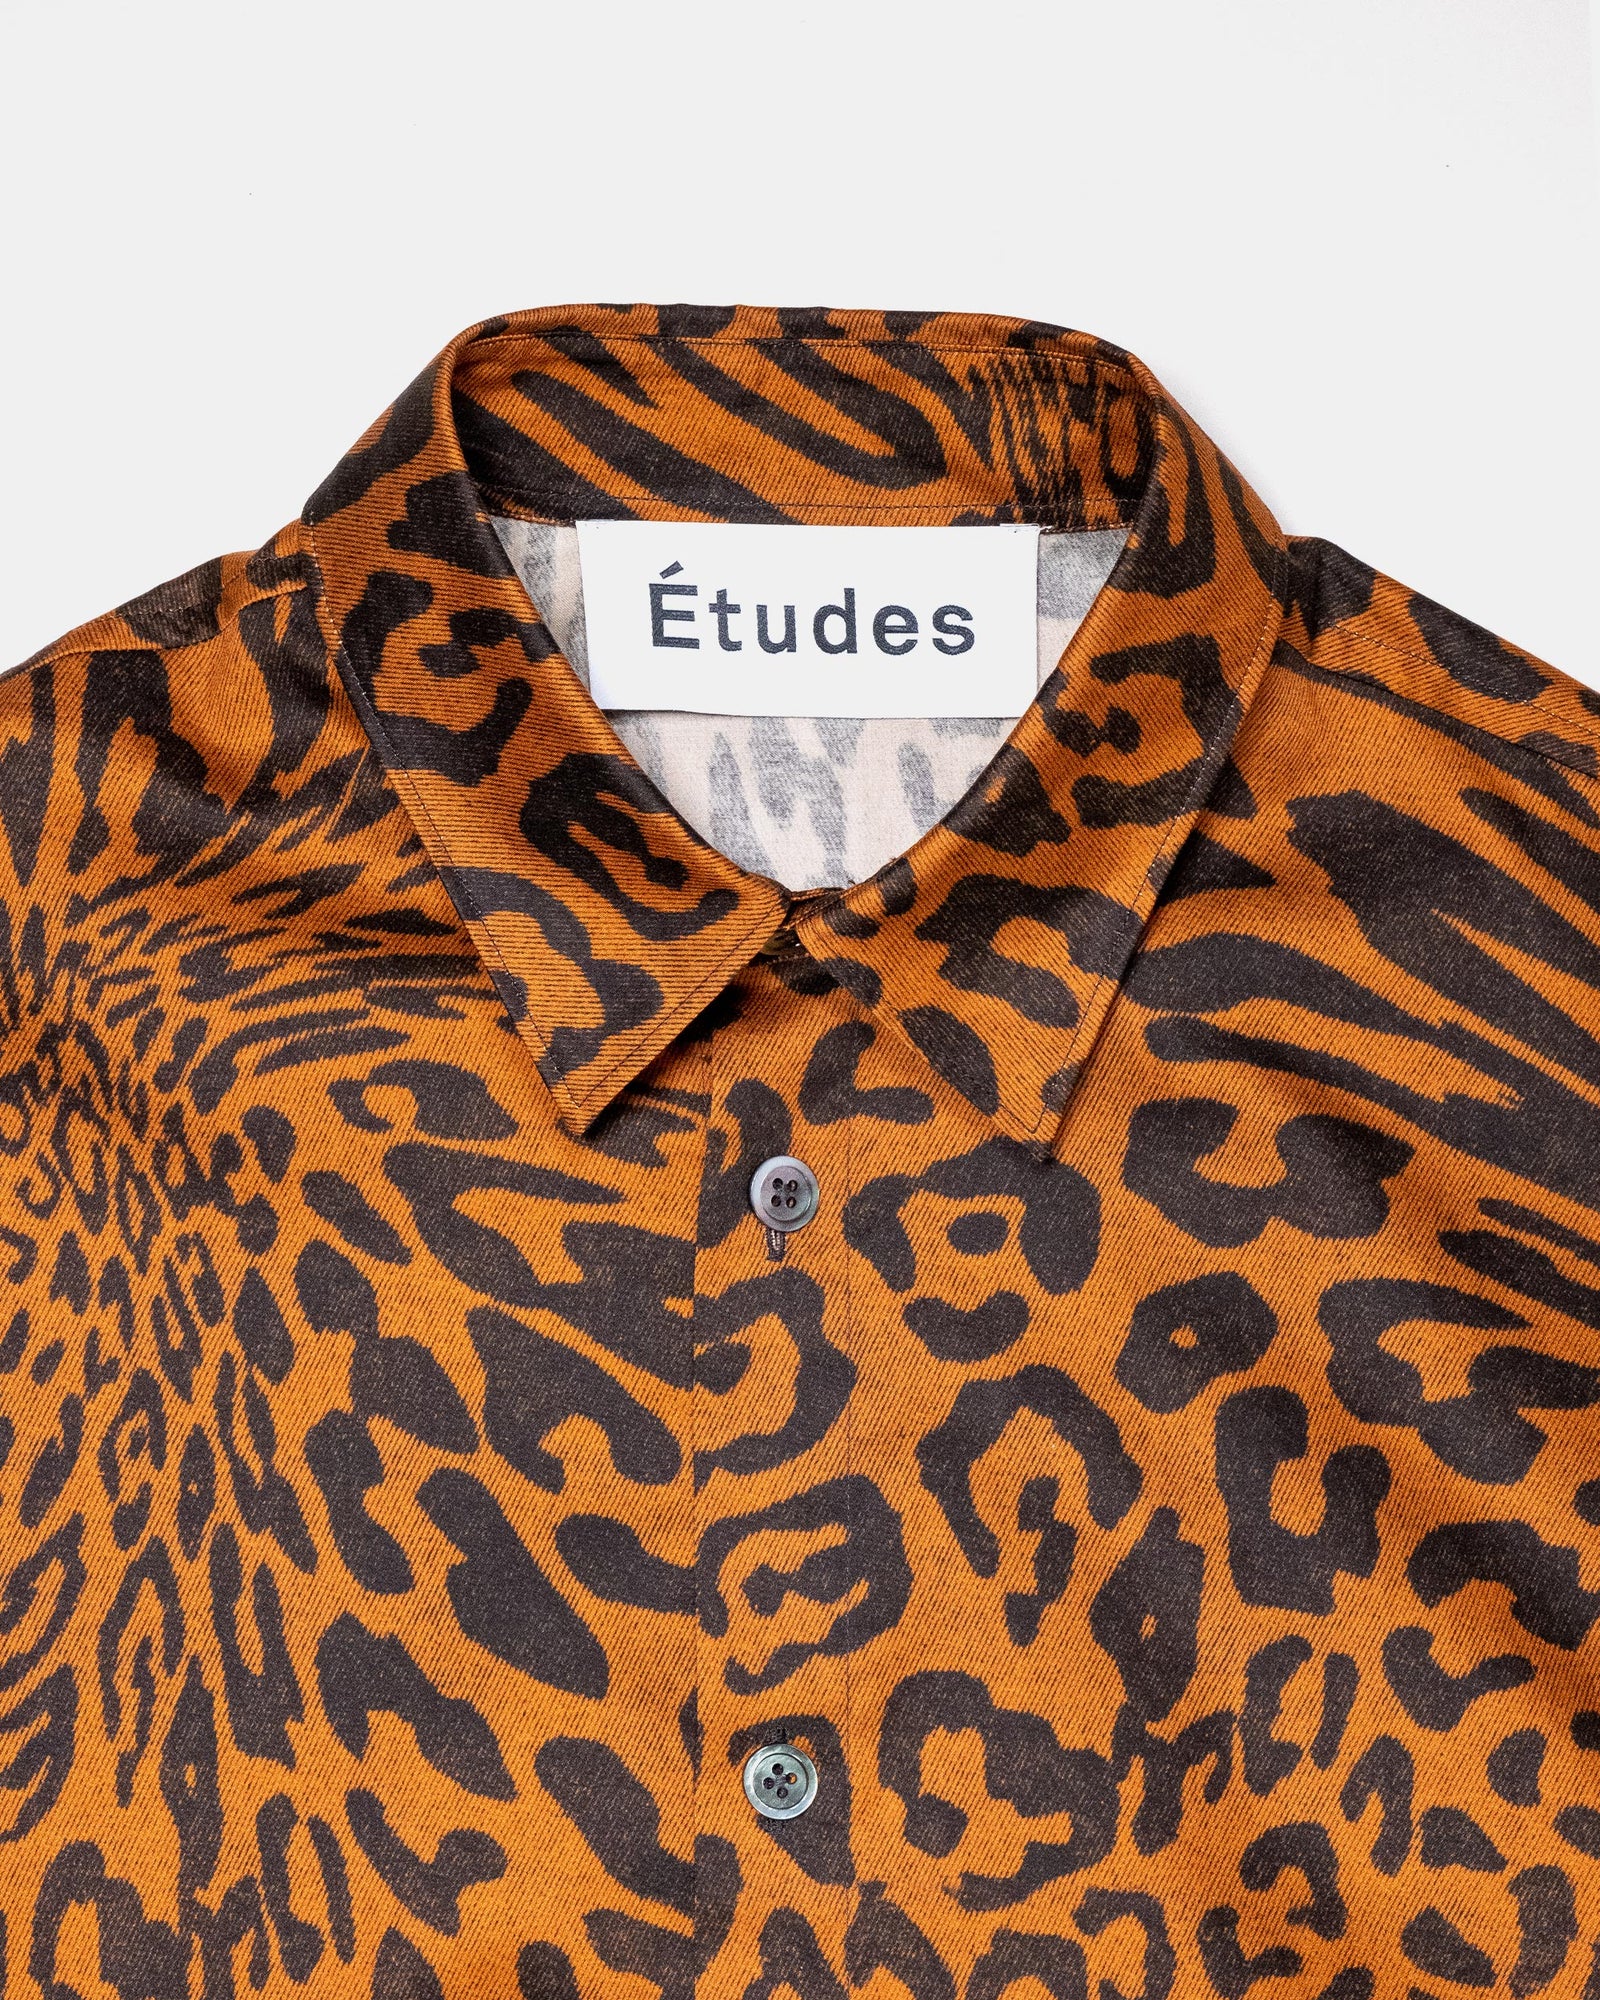 Études Illusion Leopard Shirt